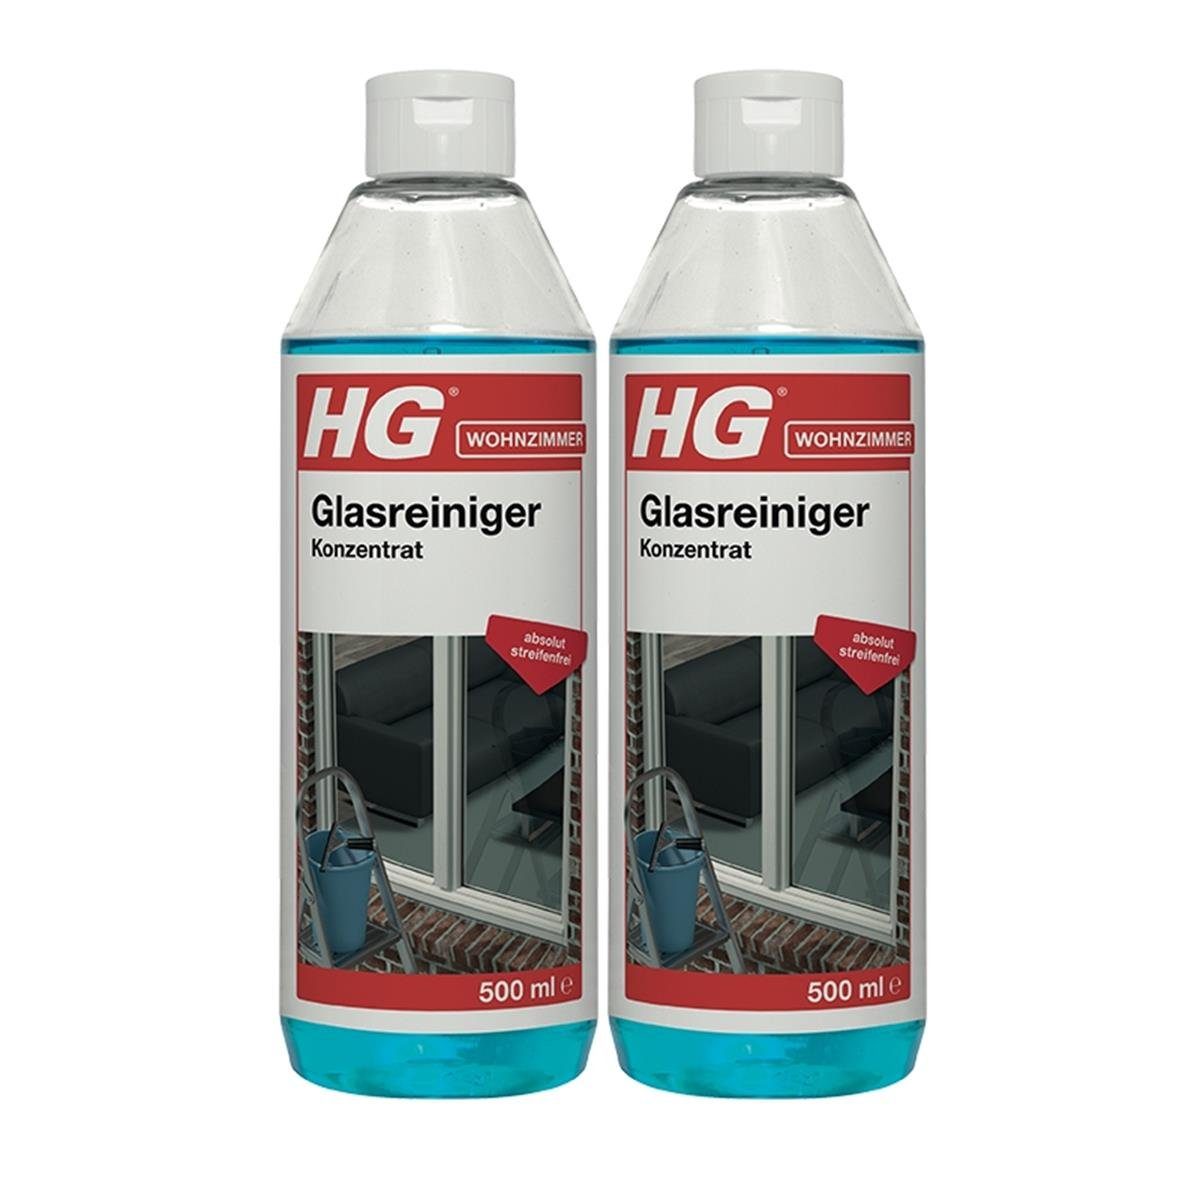 HG HG Glasreiniger Konzentrat 500ml - Absolut schlierenfrei (2er Pack) Glasreiniger